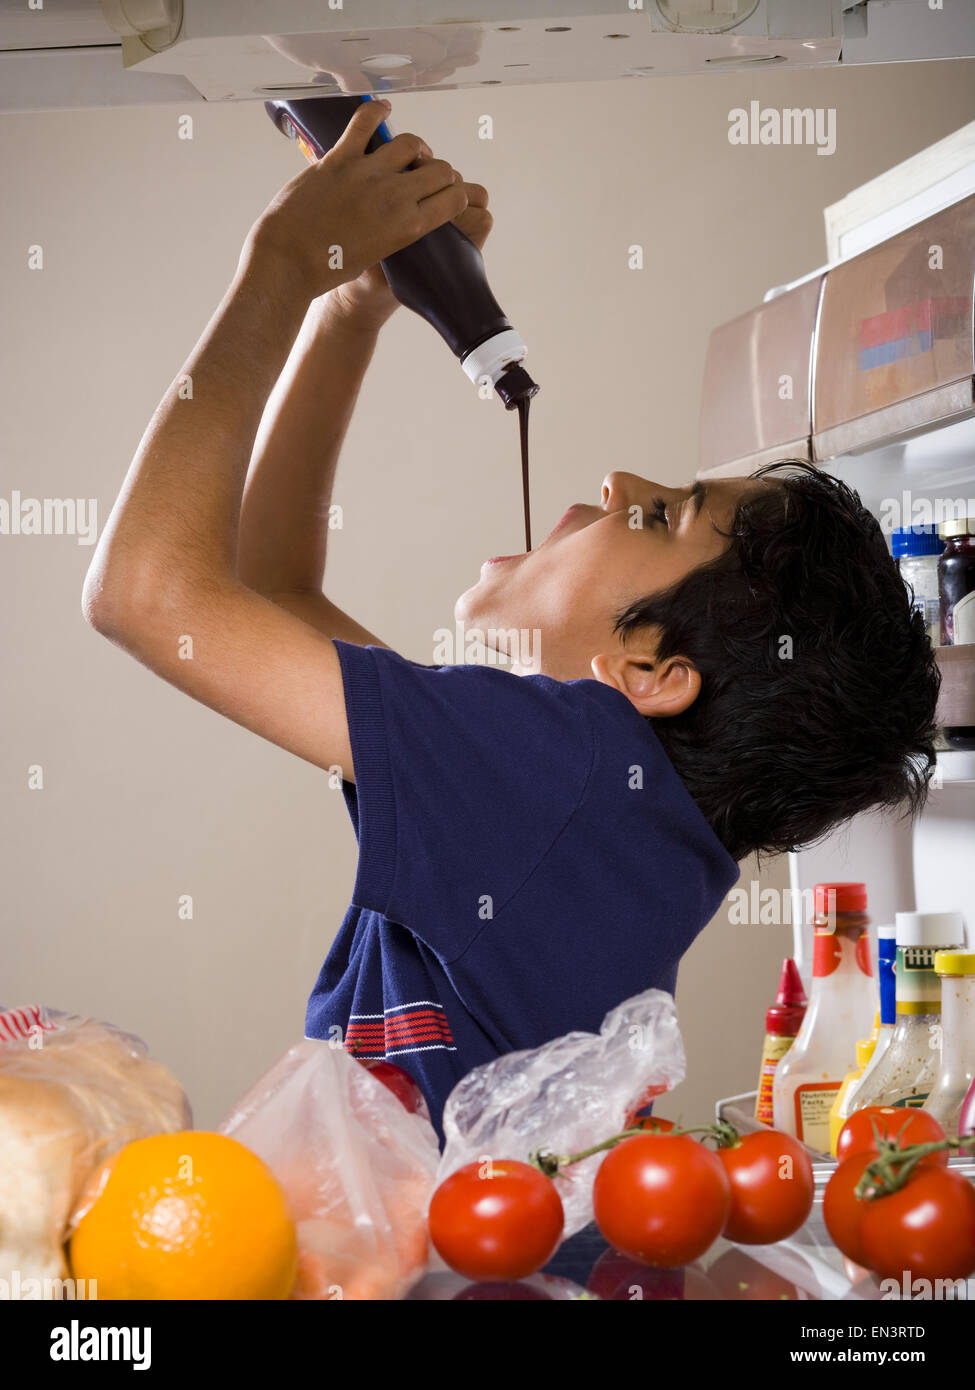 Junge trinken Schokolade Sirup aus Flasche im Kühlschrank Stockfotografie -  Alamy